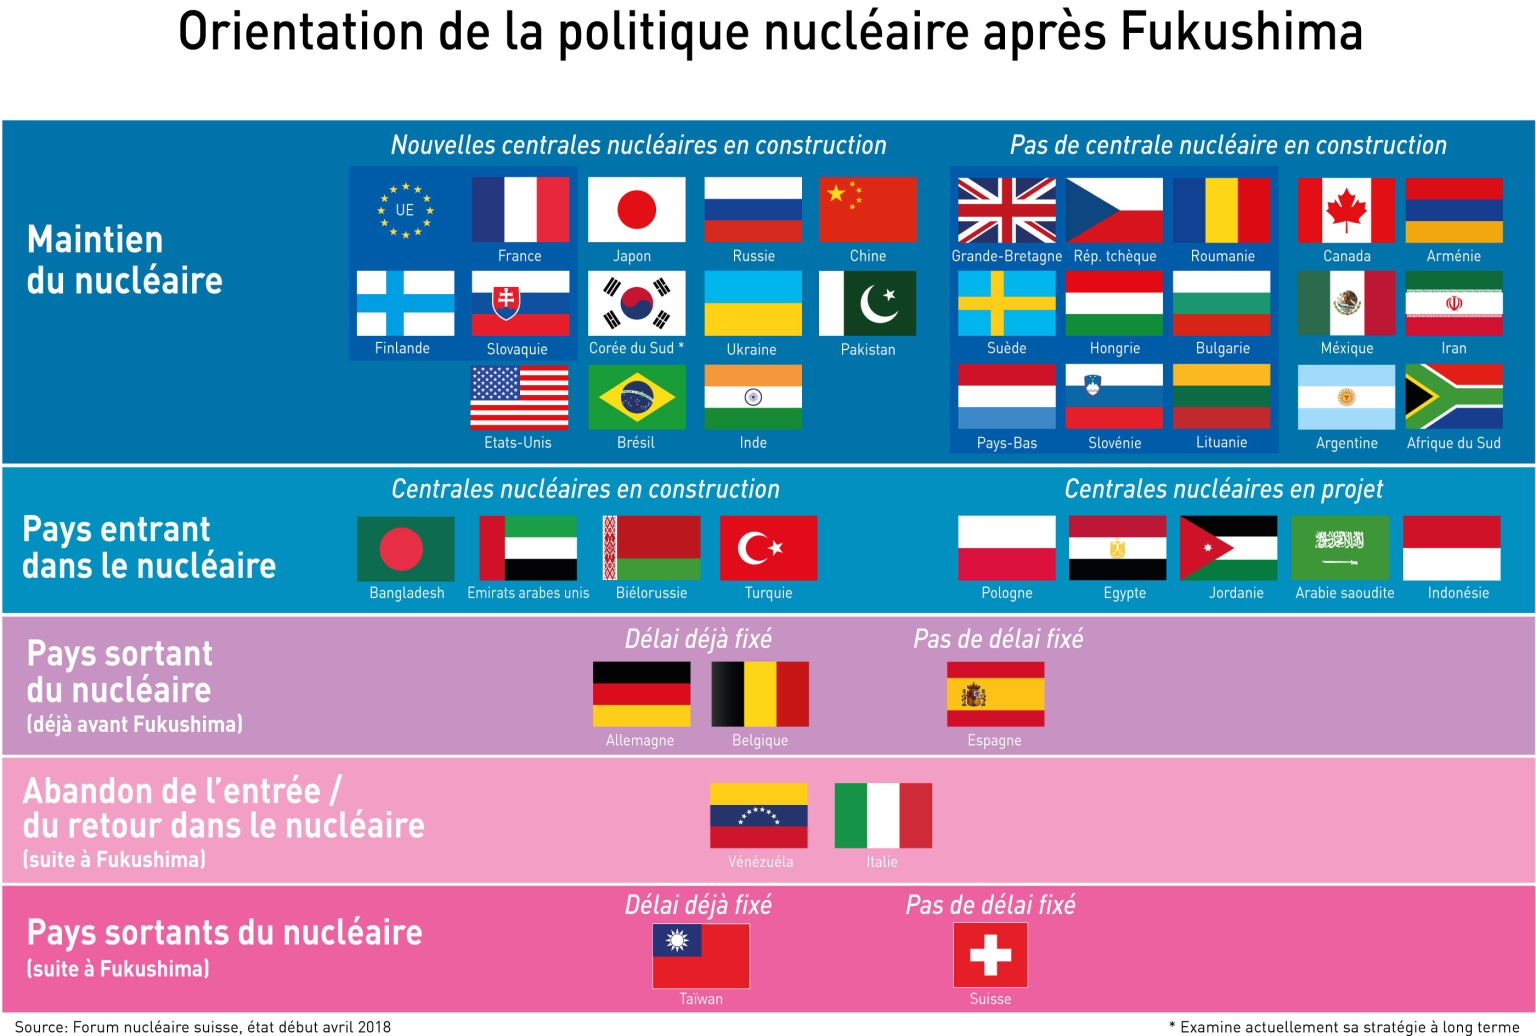 Orientation de la politique nucléaire après Fukushima